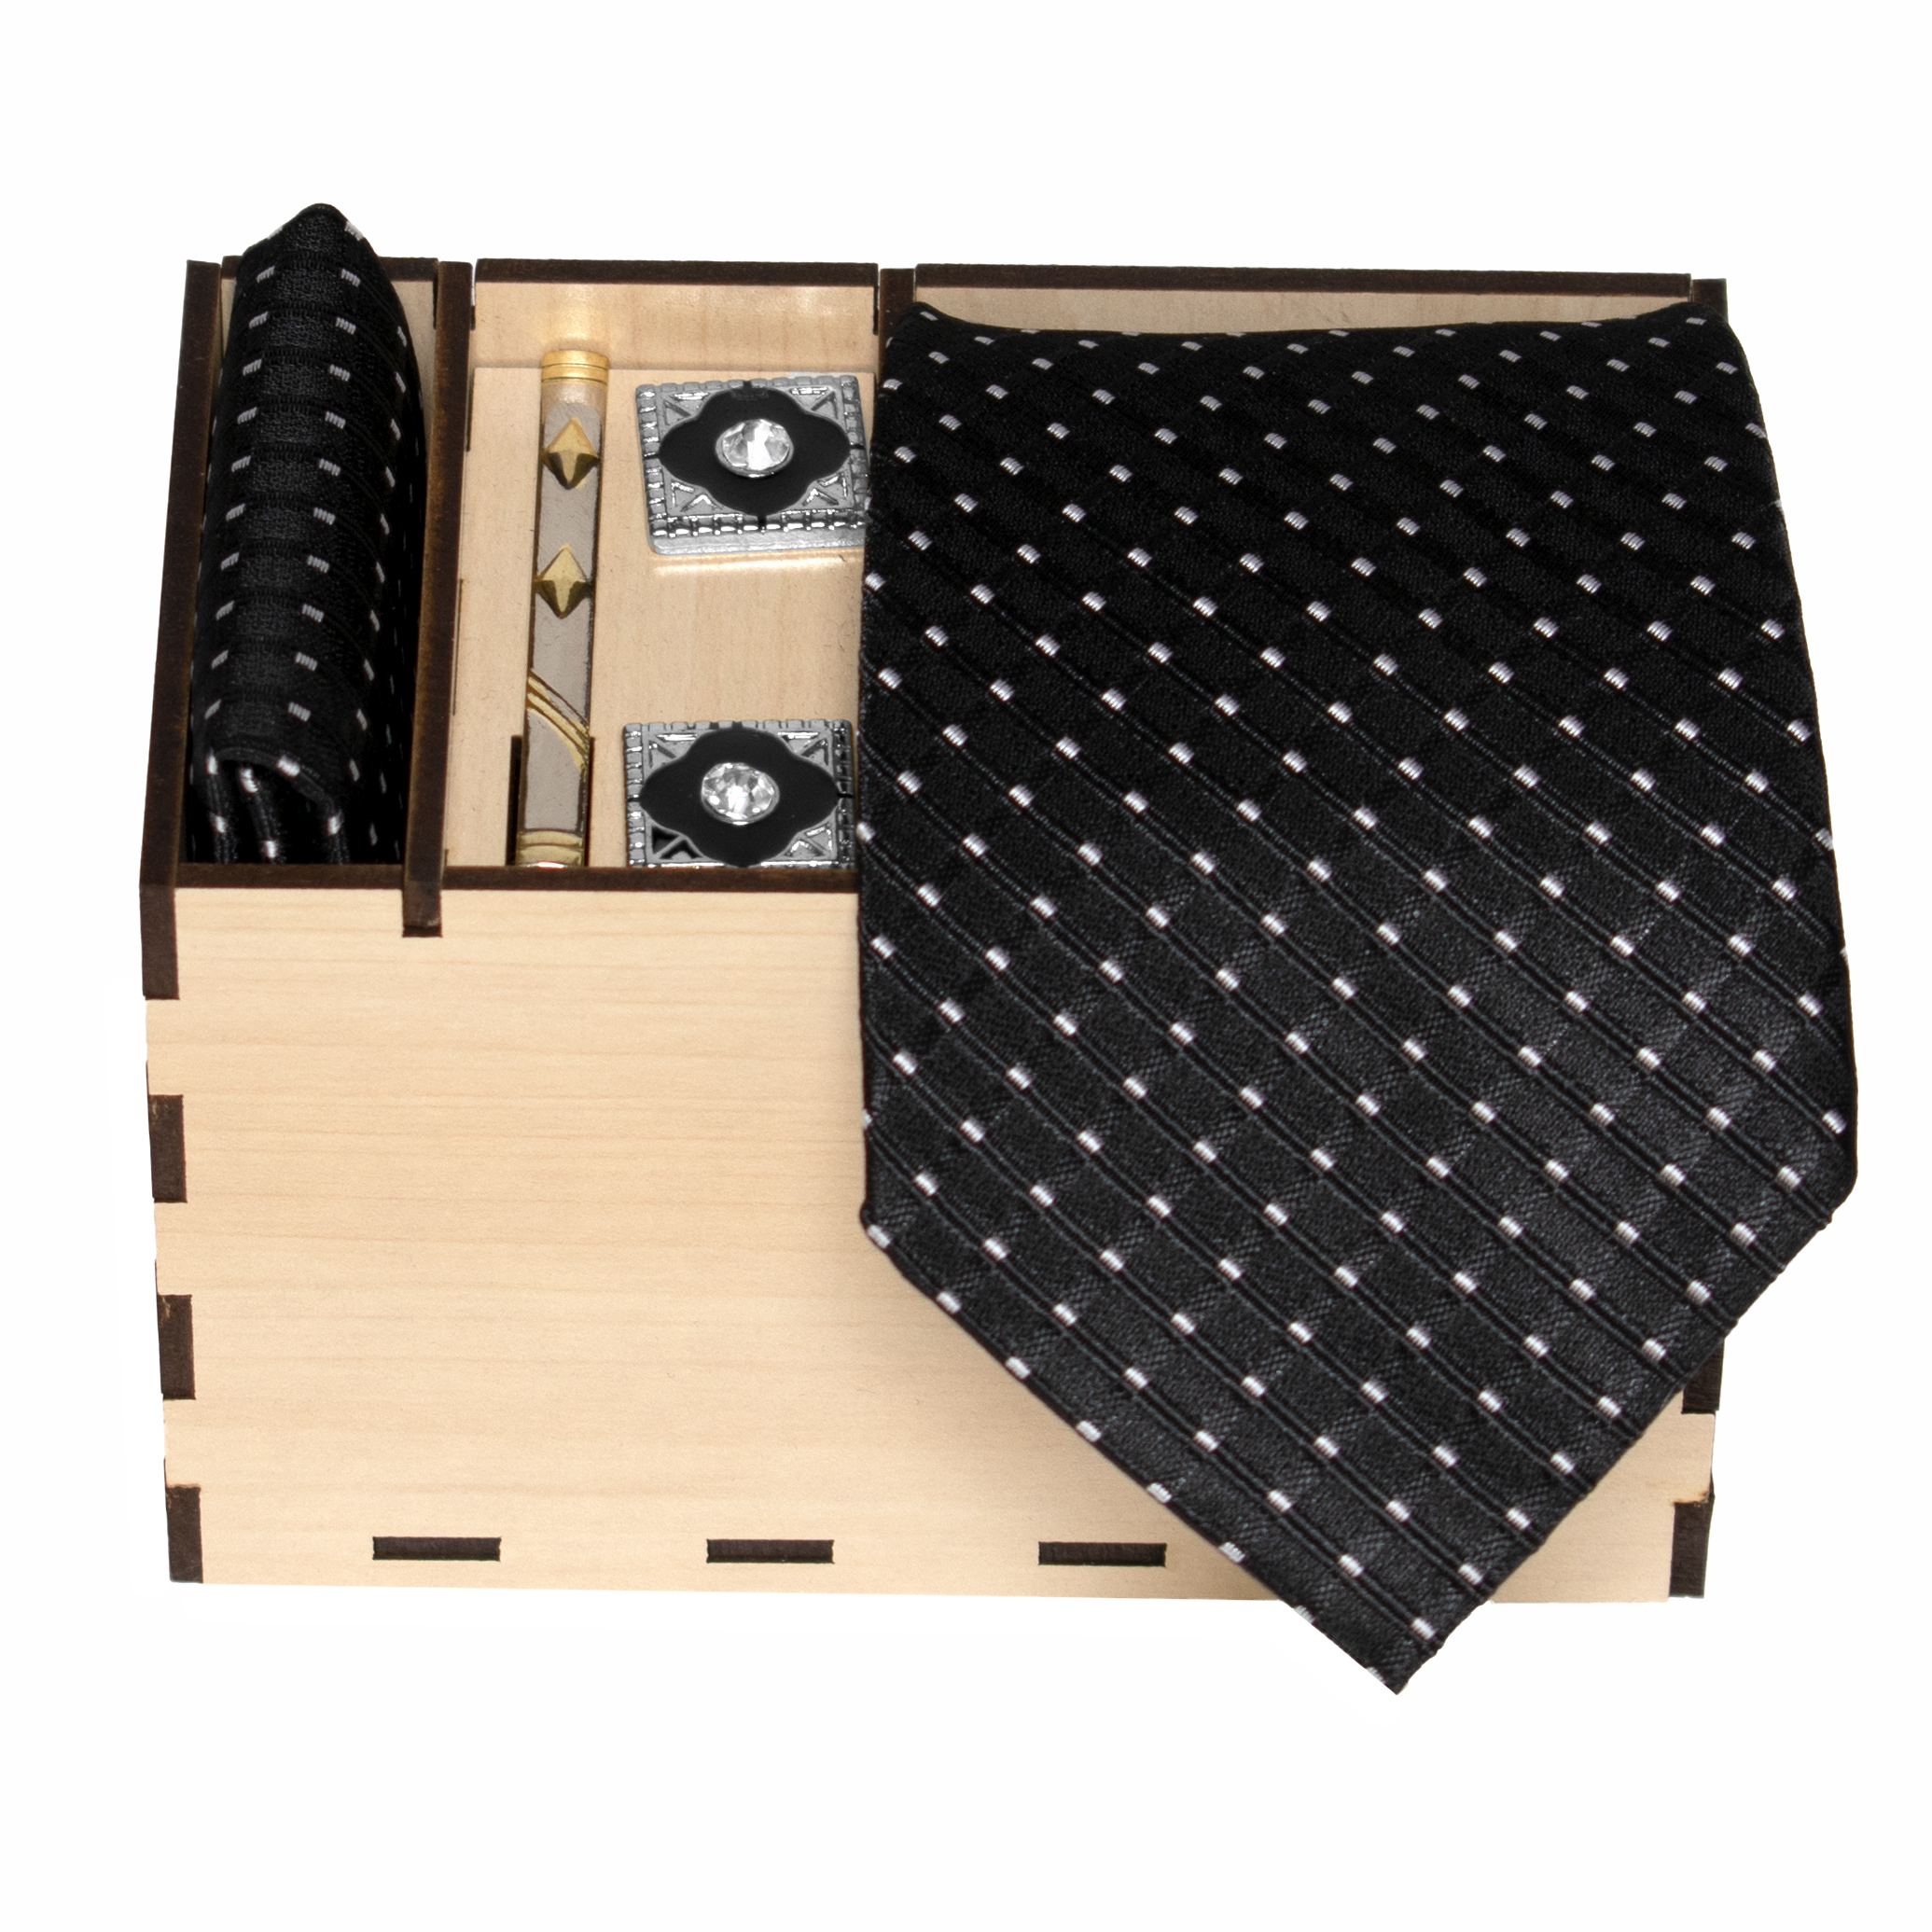 نقد و بررسی ست کراوات و دستمال جیب و دکمه سردست و گیره کراوات مردانه مدل 473 توسط خریداران